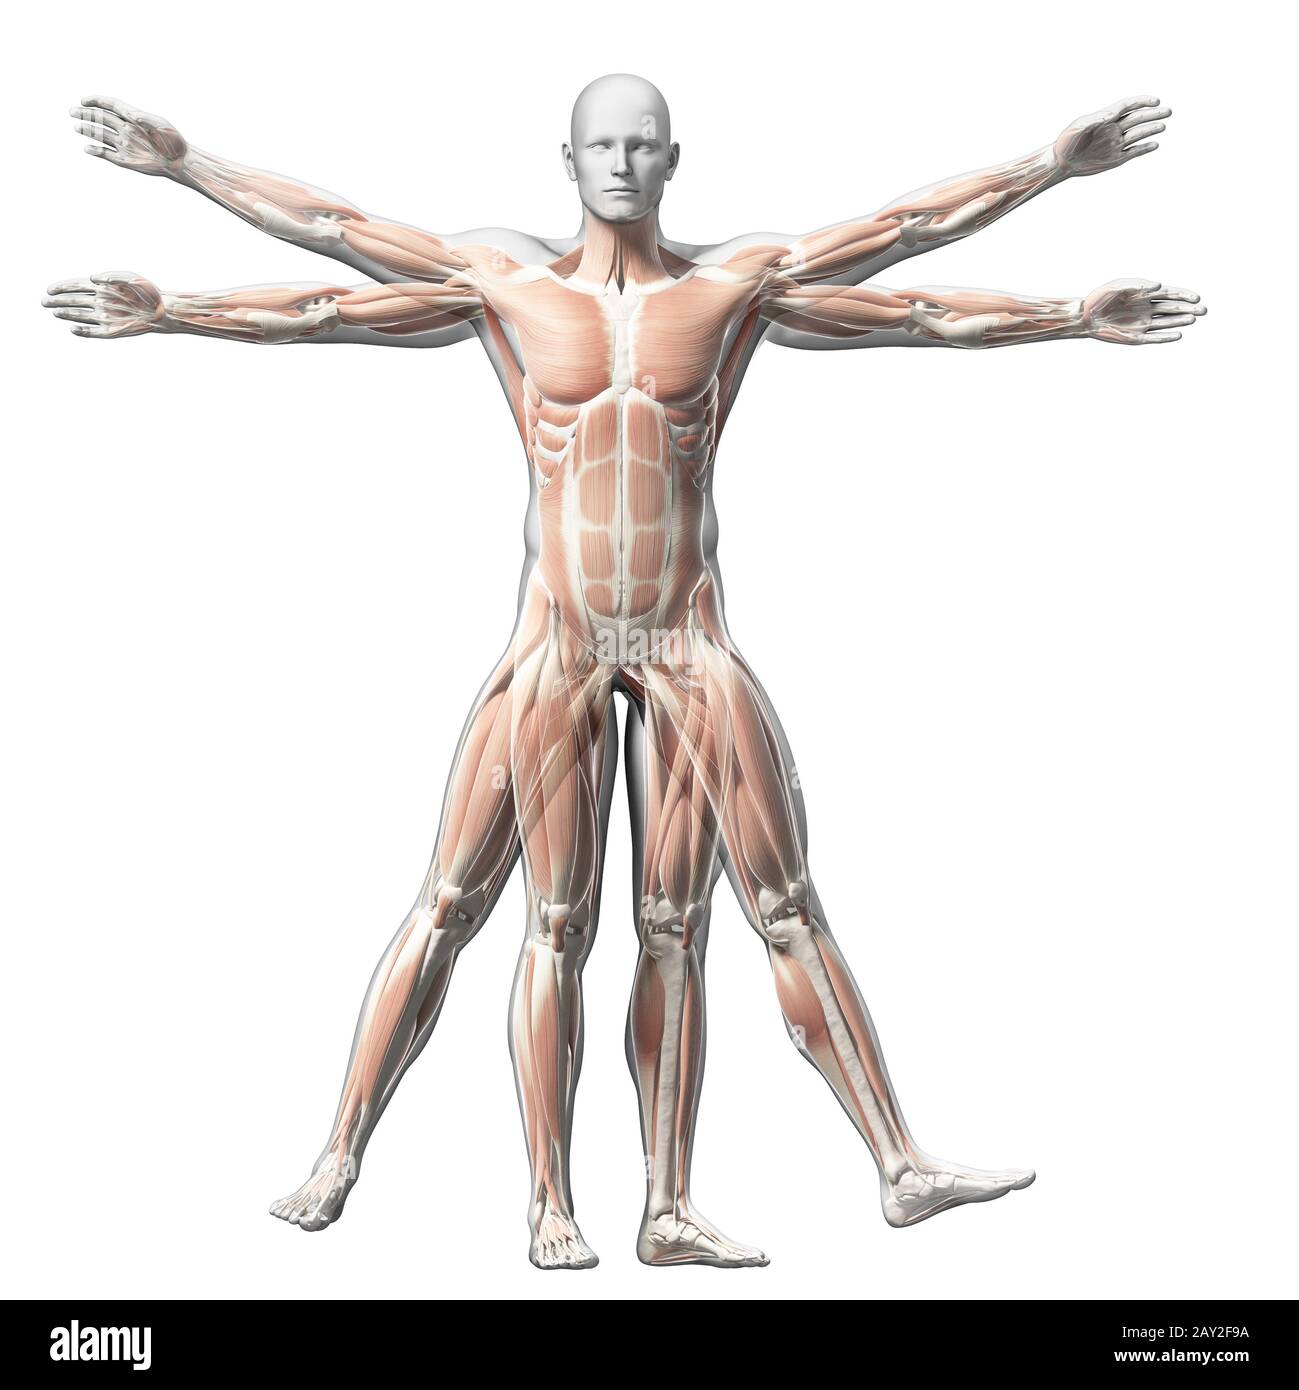 Vitruvian Man Atlas Pose Images - Free Download on Freepik